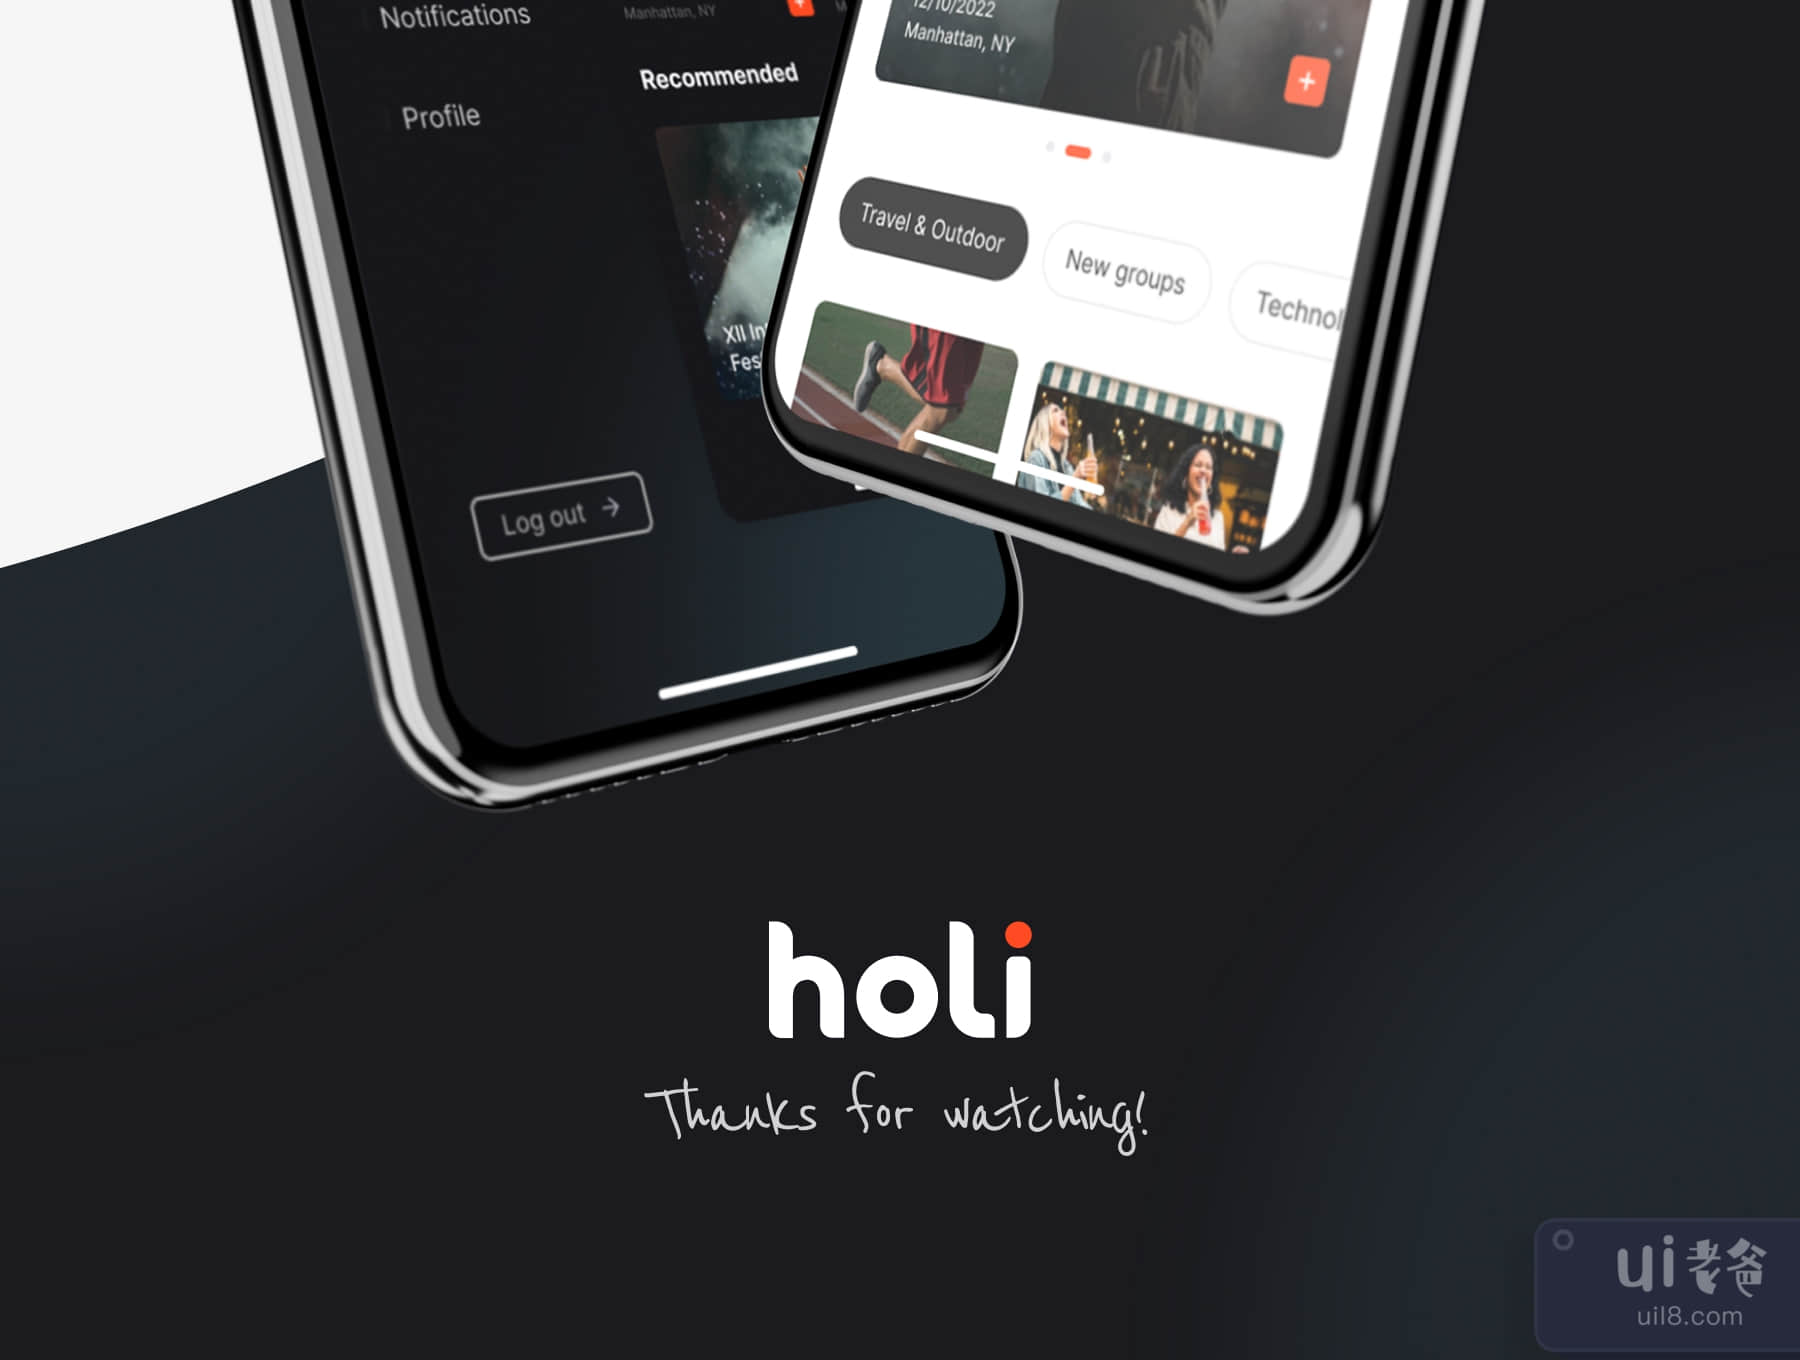 霍利 - 预订应用程序UI套件 (Holi · Booking App UI Kit)插图7